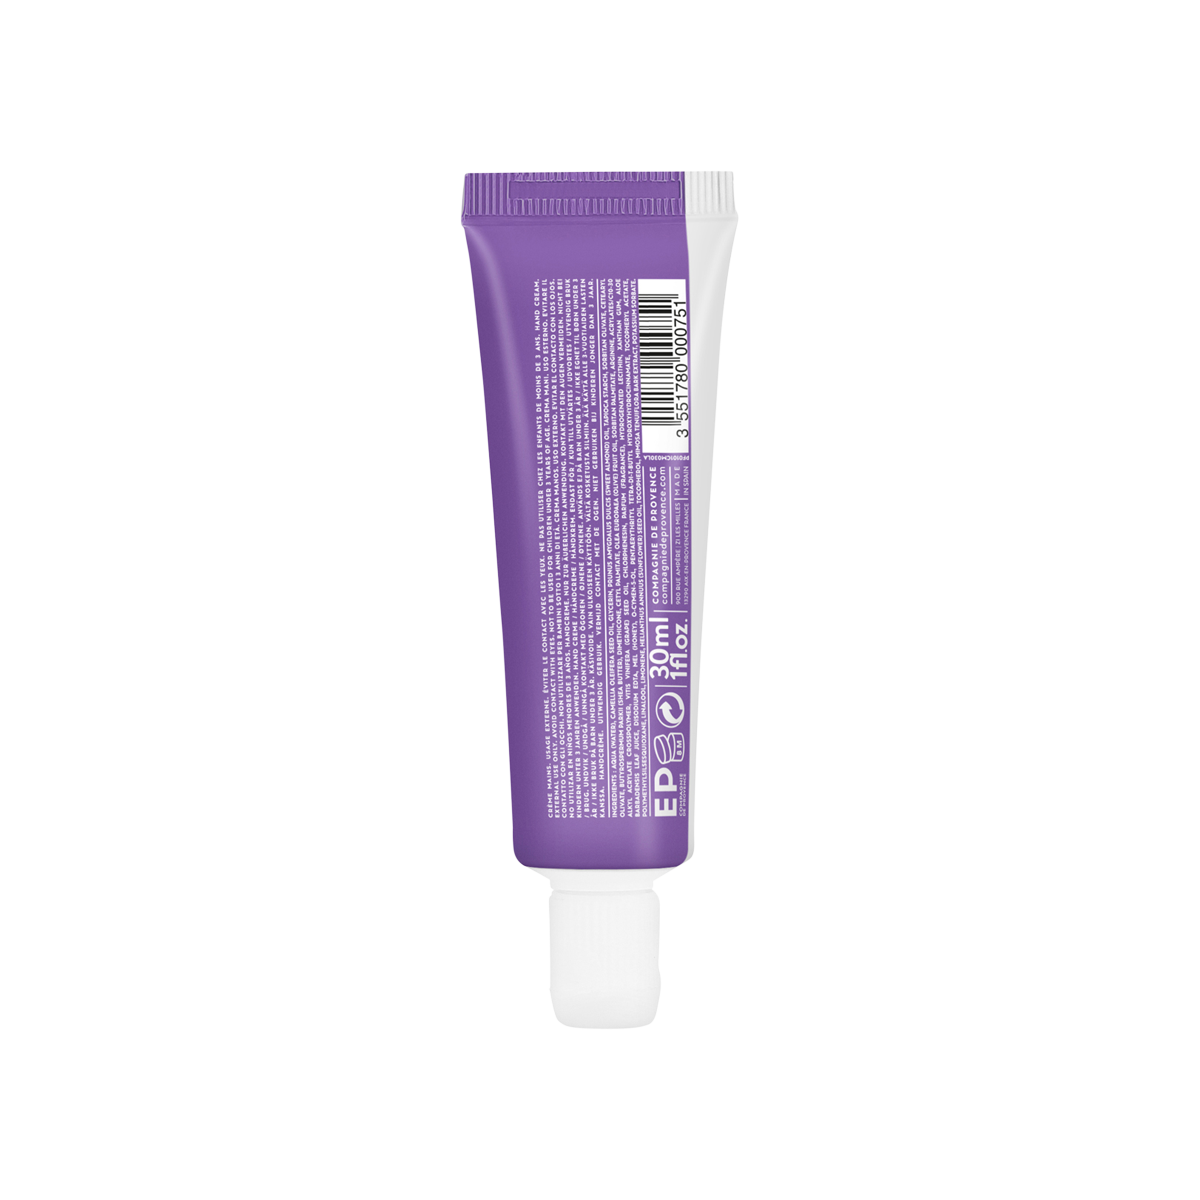 Compagnie de Provence - Aromatic Lavender Hand Cream